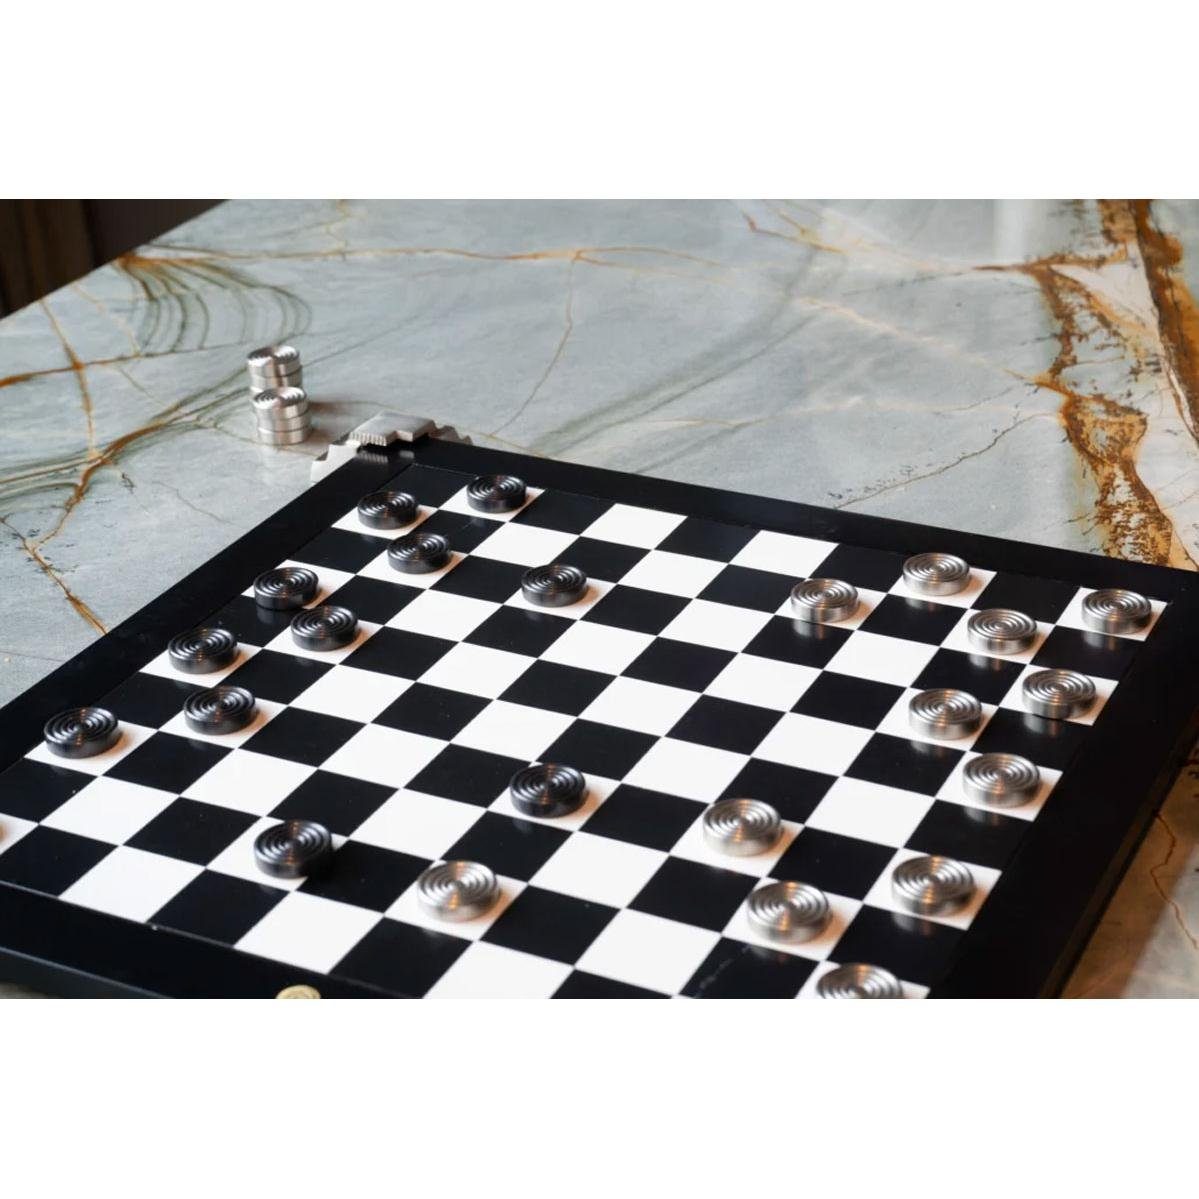 AUTHENTIC MODELS Dekofigur und Dame für mit Metallfüßen Schach Spielbrett wendbares (47x47cm)